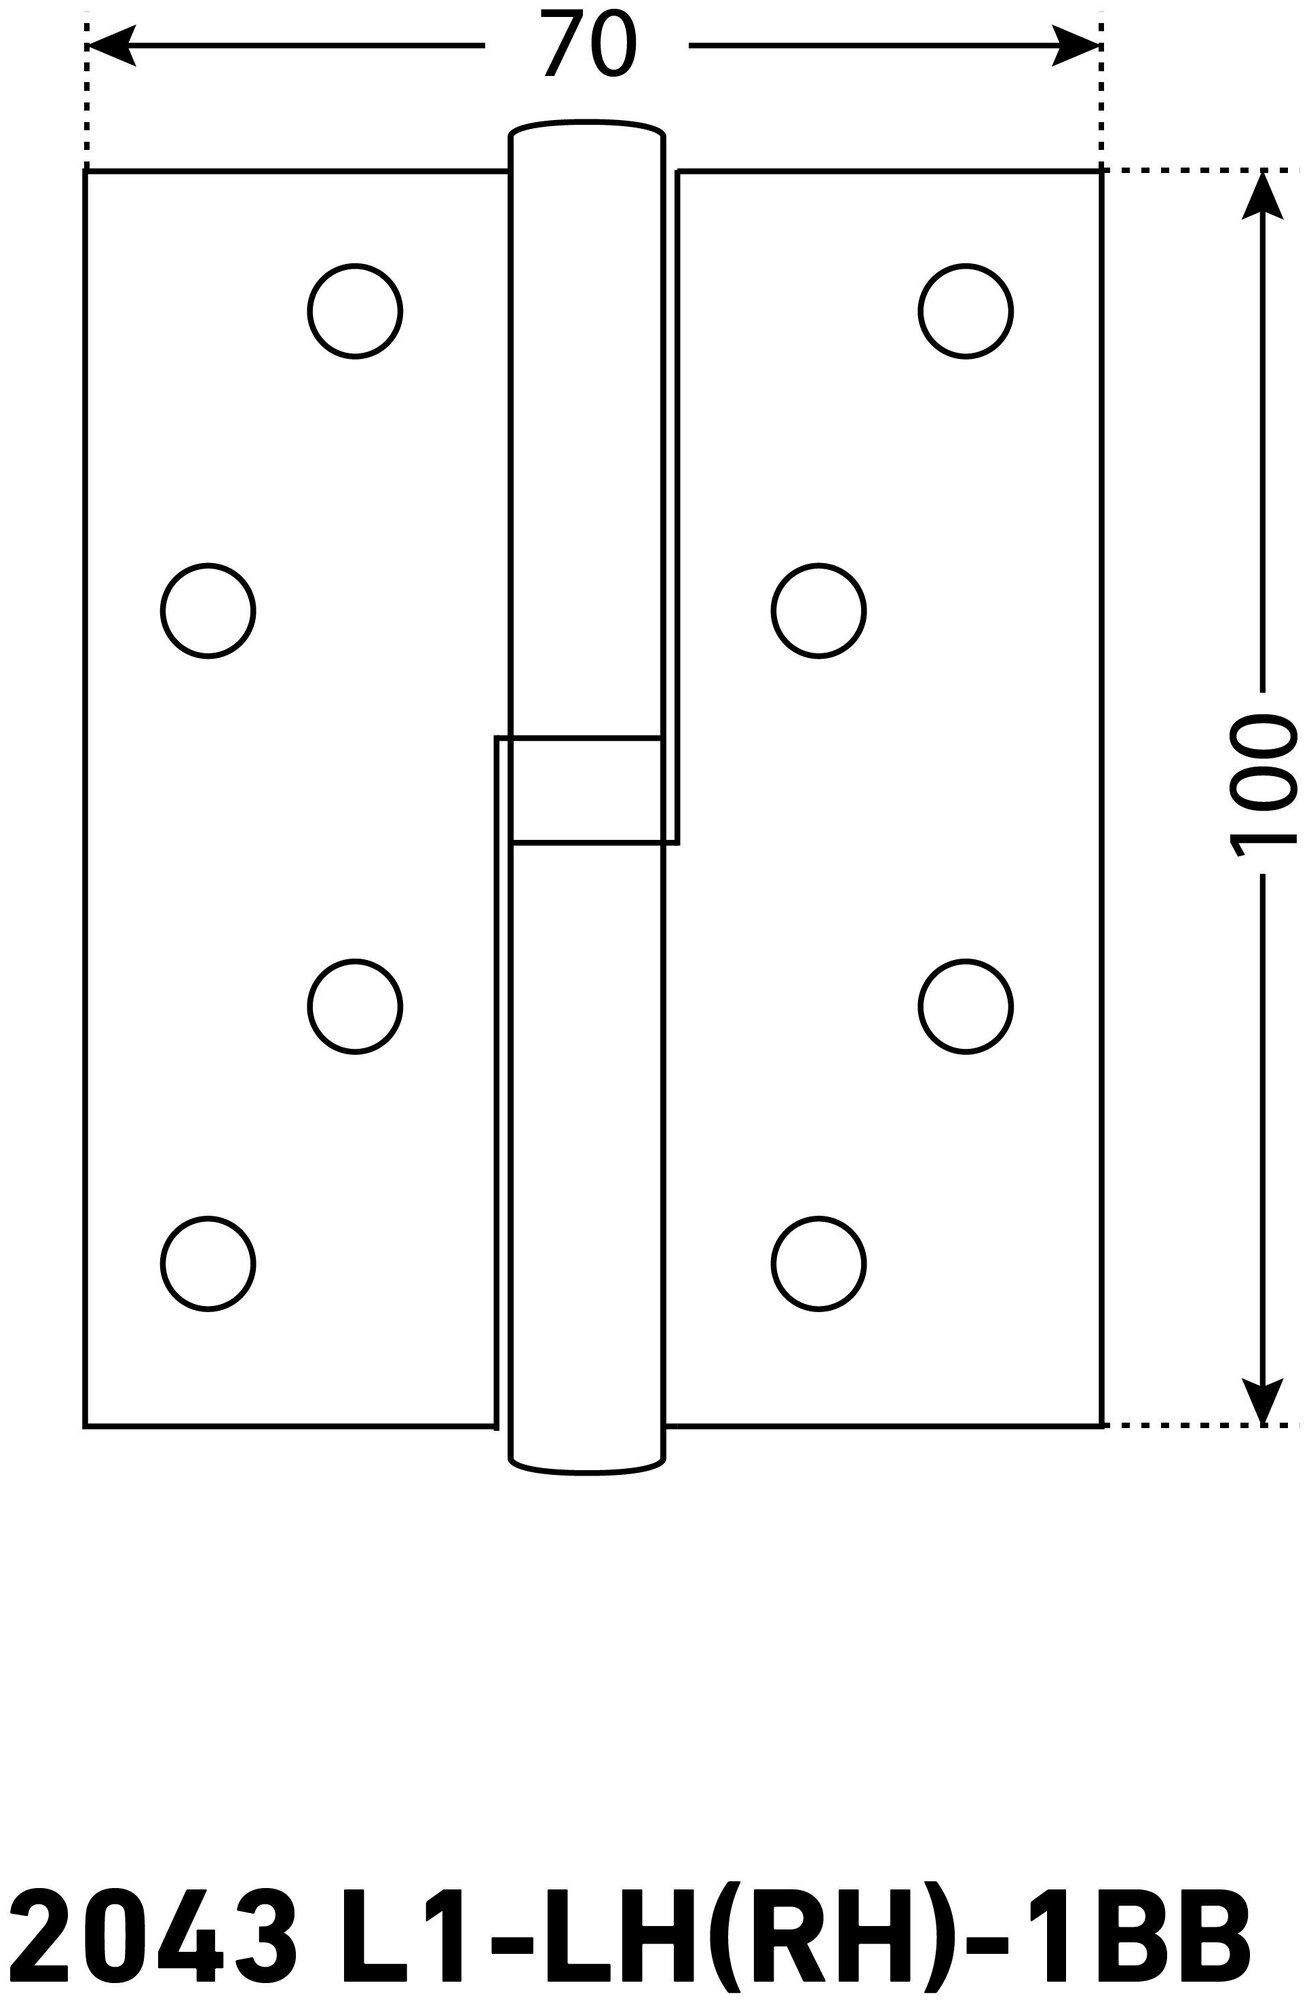 Петля дверная (2 штуки) правая аллюр 2043 L1-RH-1BB-CP, цвет хром 100х70